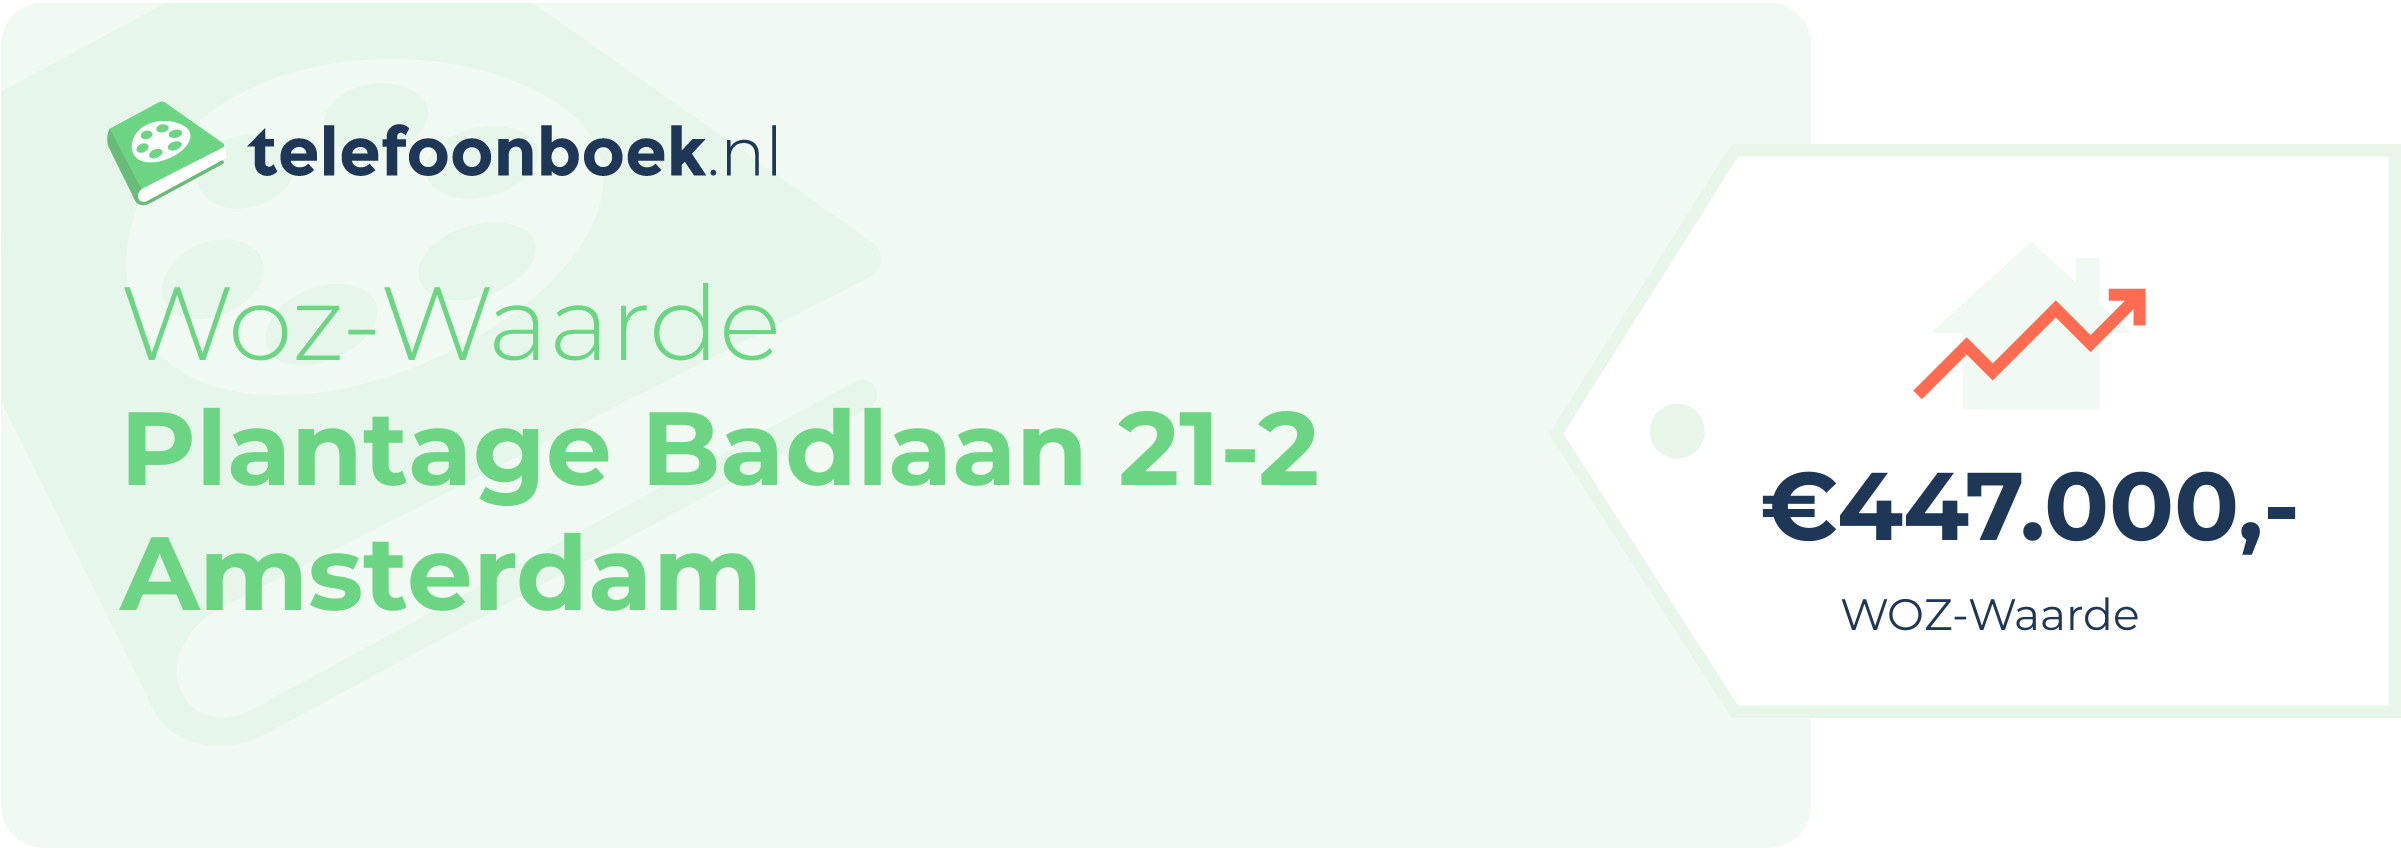 WOZ-waarde Plantage Badlaan 21-2 Amsterdam